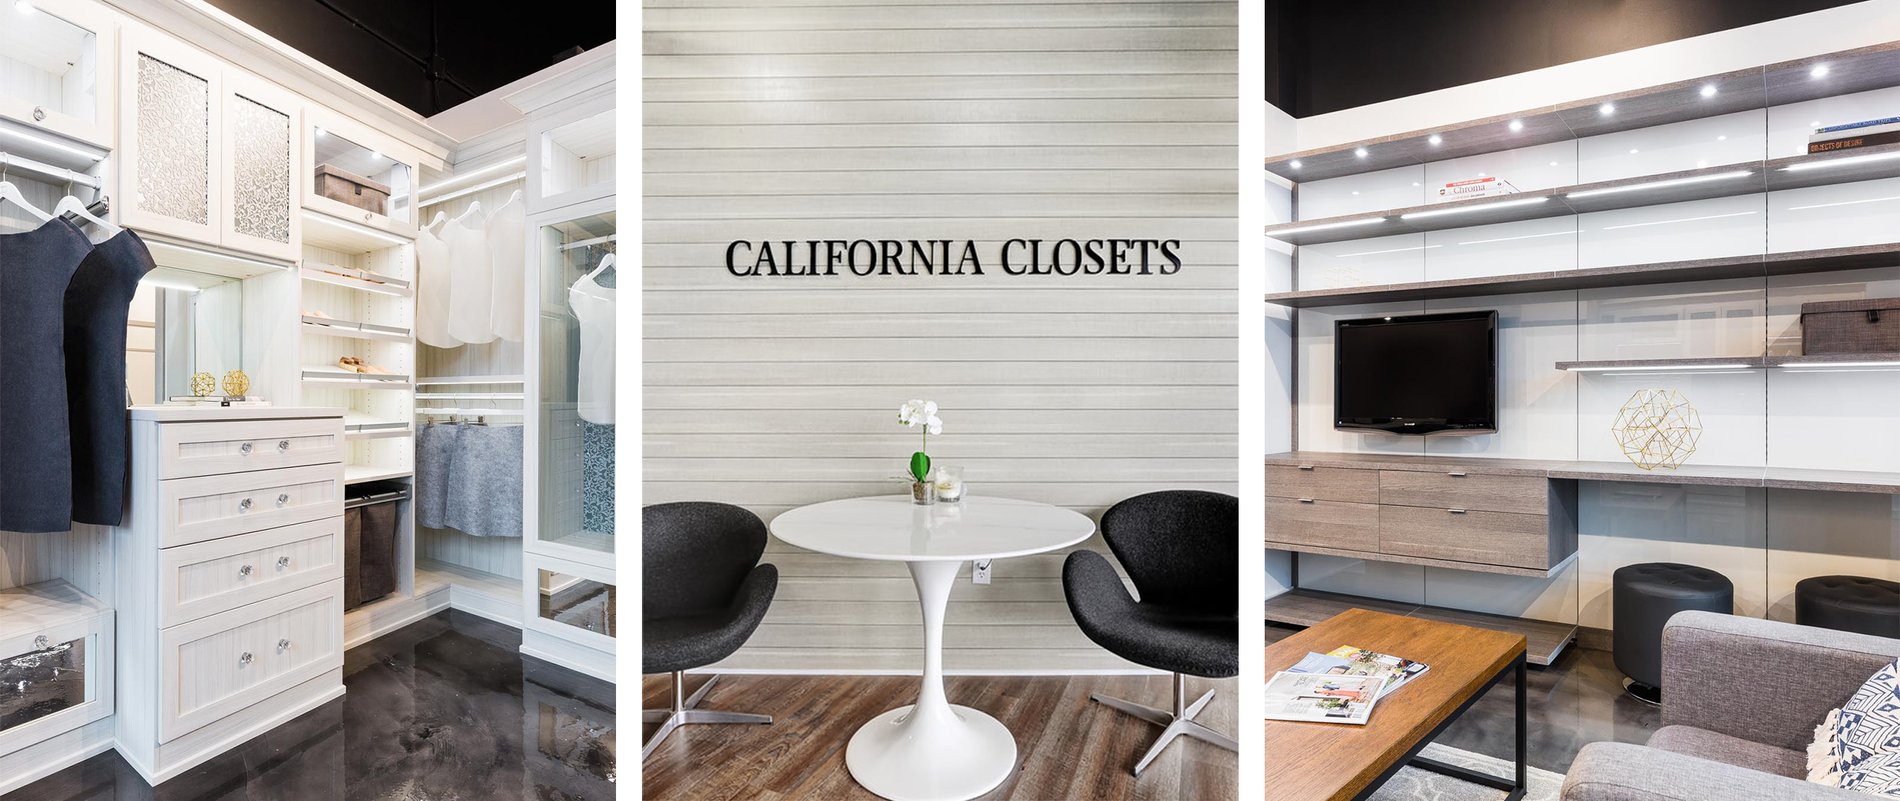 Custom Closets and Closet Systems Windsor, Ontario - California Closets